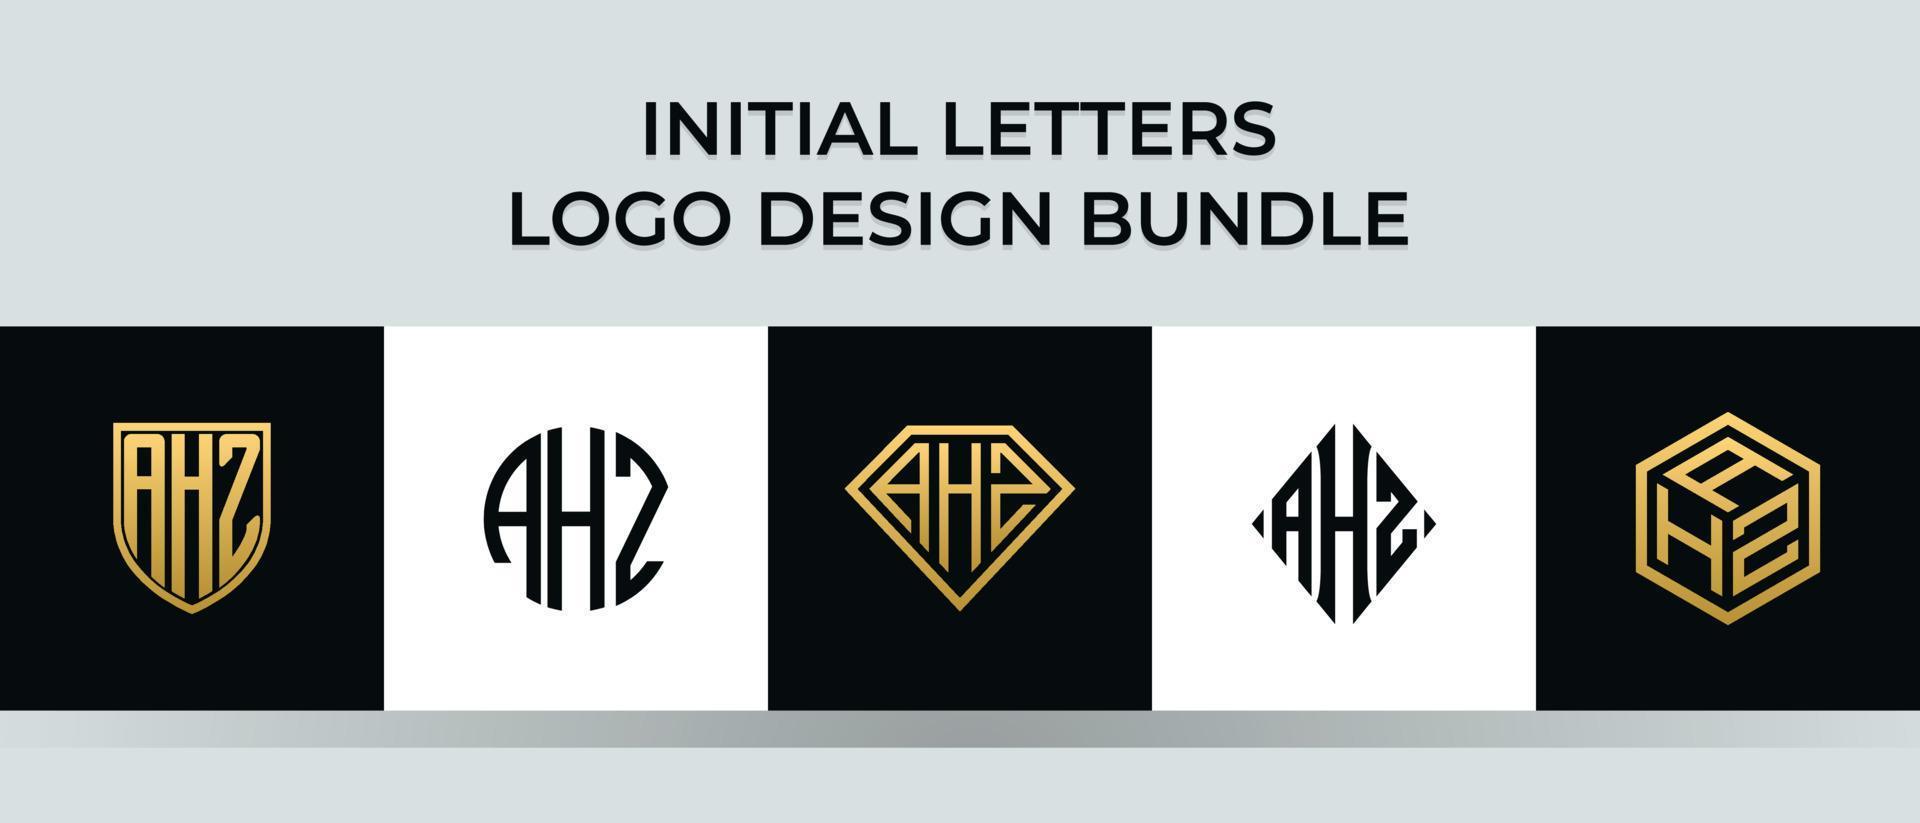 Initial letters AHZ logo designs Bundle vector